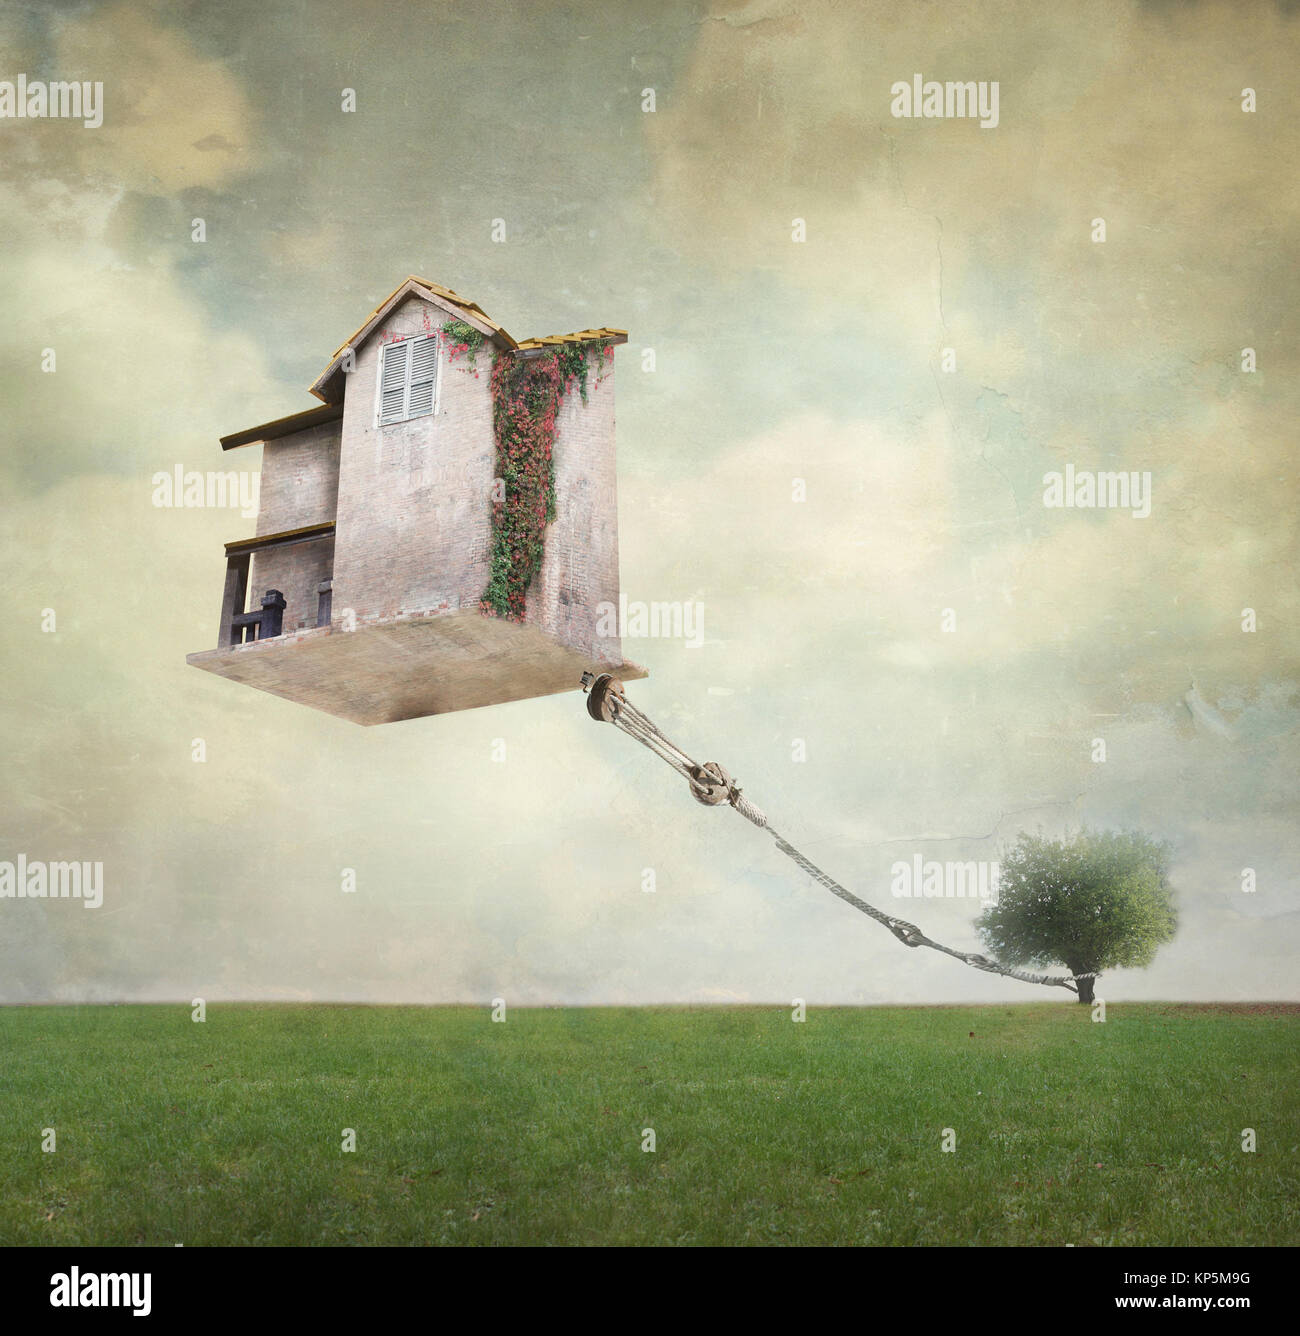 Immagine artistica che rappresenta una casa galleggianti in aria legata a una corda per l'albero in un surreale sfondo vintage Foto Stock